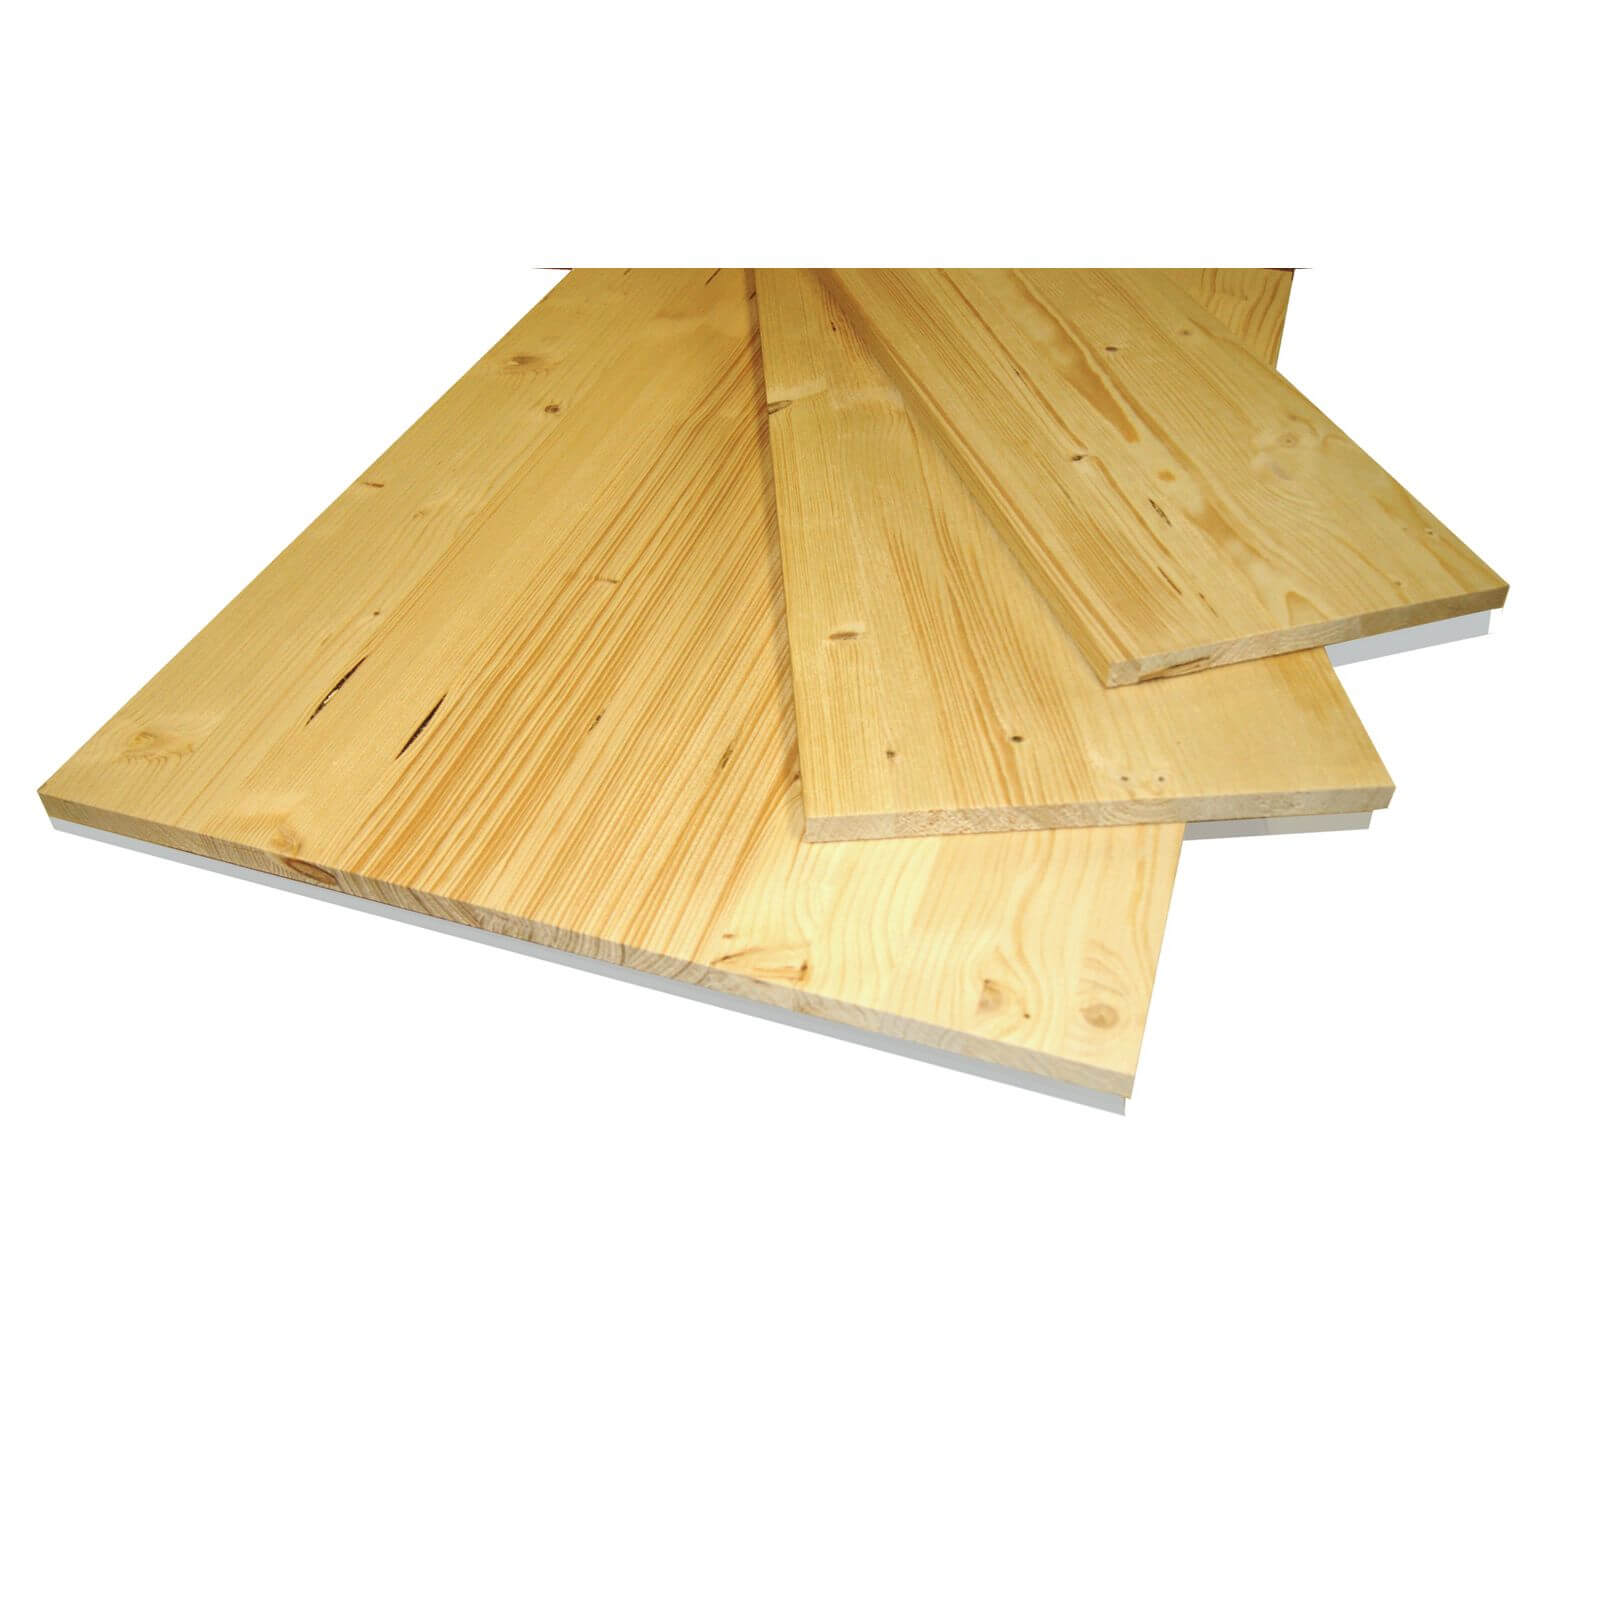 Metsa Wood Solid Spruce Wooden Panel Board 2.35m (18 x 300 x 2350mm)